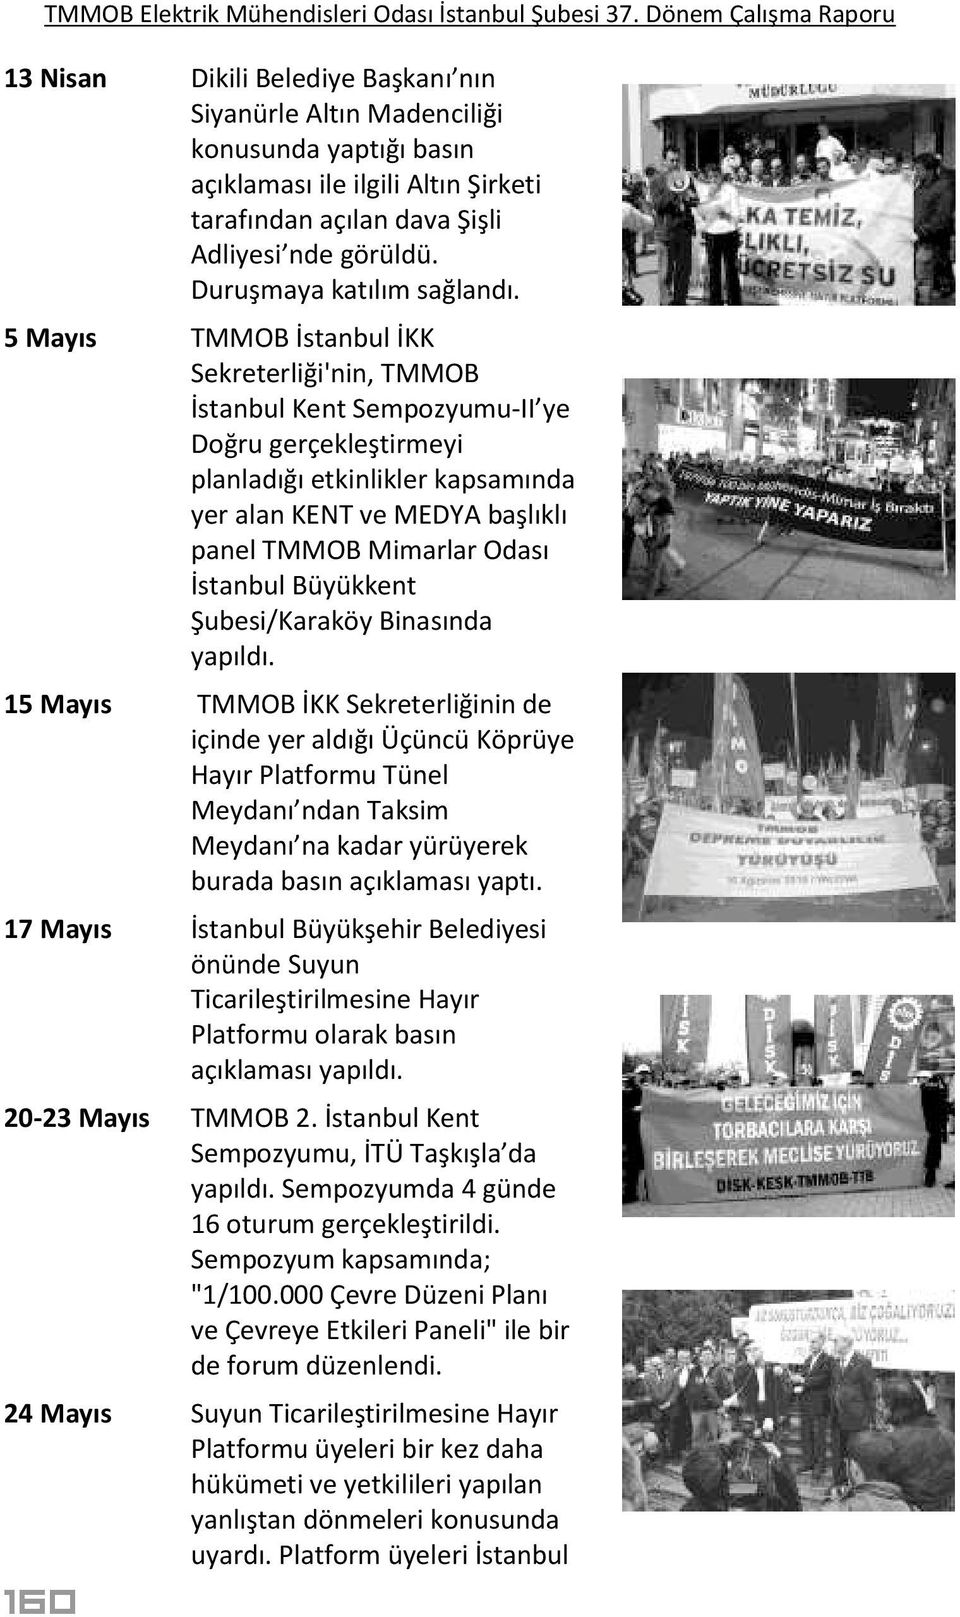 5 Mayıs TMMOB İstanbul İKK Sekreterliği'nin, TMMOB İstanbul Kent Sempozyumu-II ye Doğru gerçekleştirmeyi planladığı etkinlikler kapsamında yer alan KENT ve MEDYA başlıklı panel TMMOB Mimarlar Odası